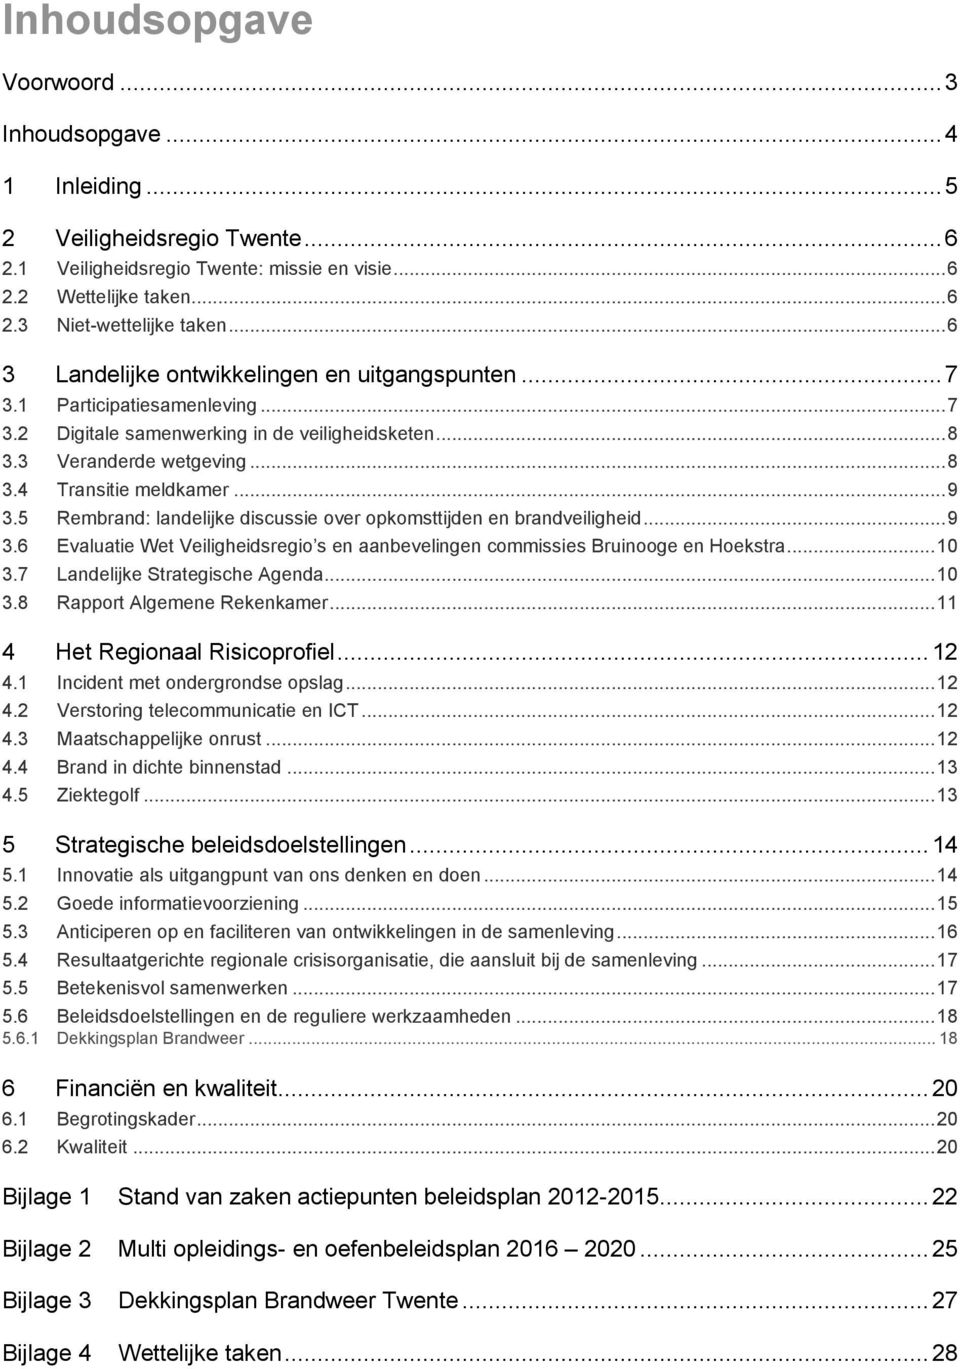 .. 9 3.5 Rembrand: landelijke discussie over opkomsttijden en brandveiligheid... 9 3.6 Evaluatie Wet Veiligheidsregio s en aanbevelingen commissies Bruinooge en Hoekstra... 10 3.